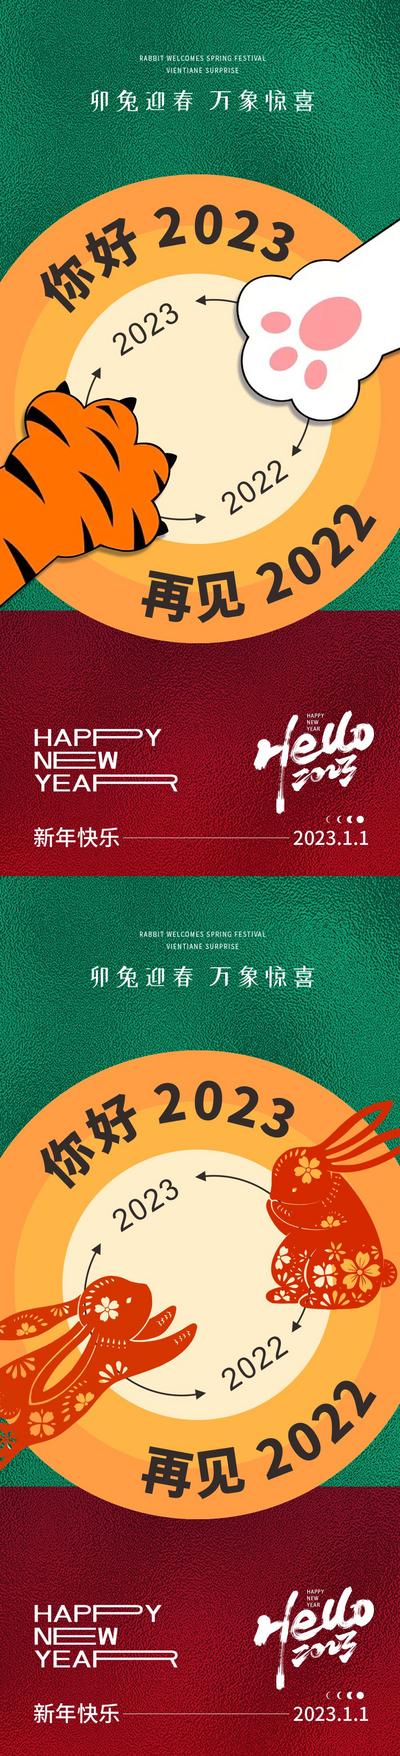 南门网 海报 公历节日 元旦 兔年 春节 小年 新年 2023 国潮